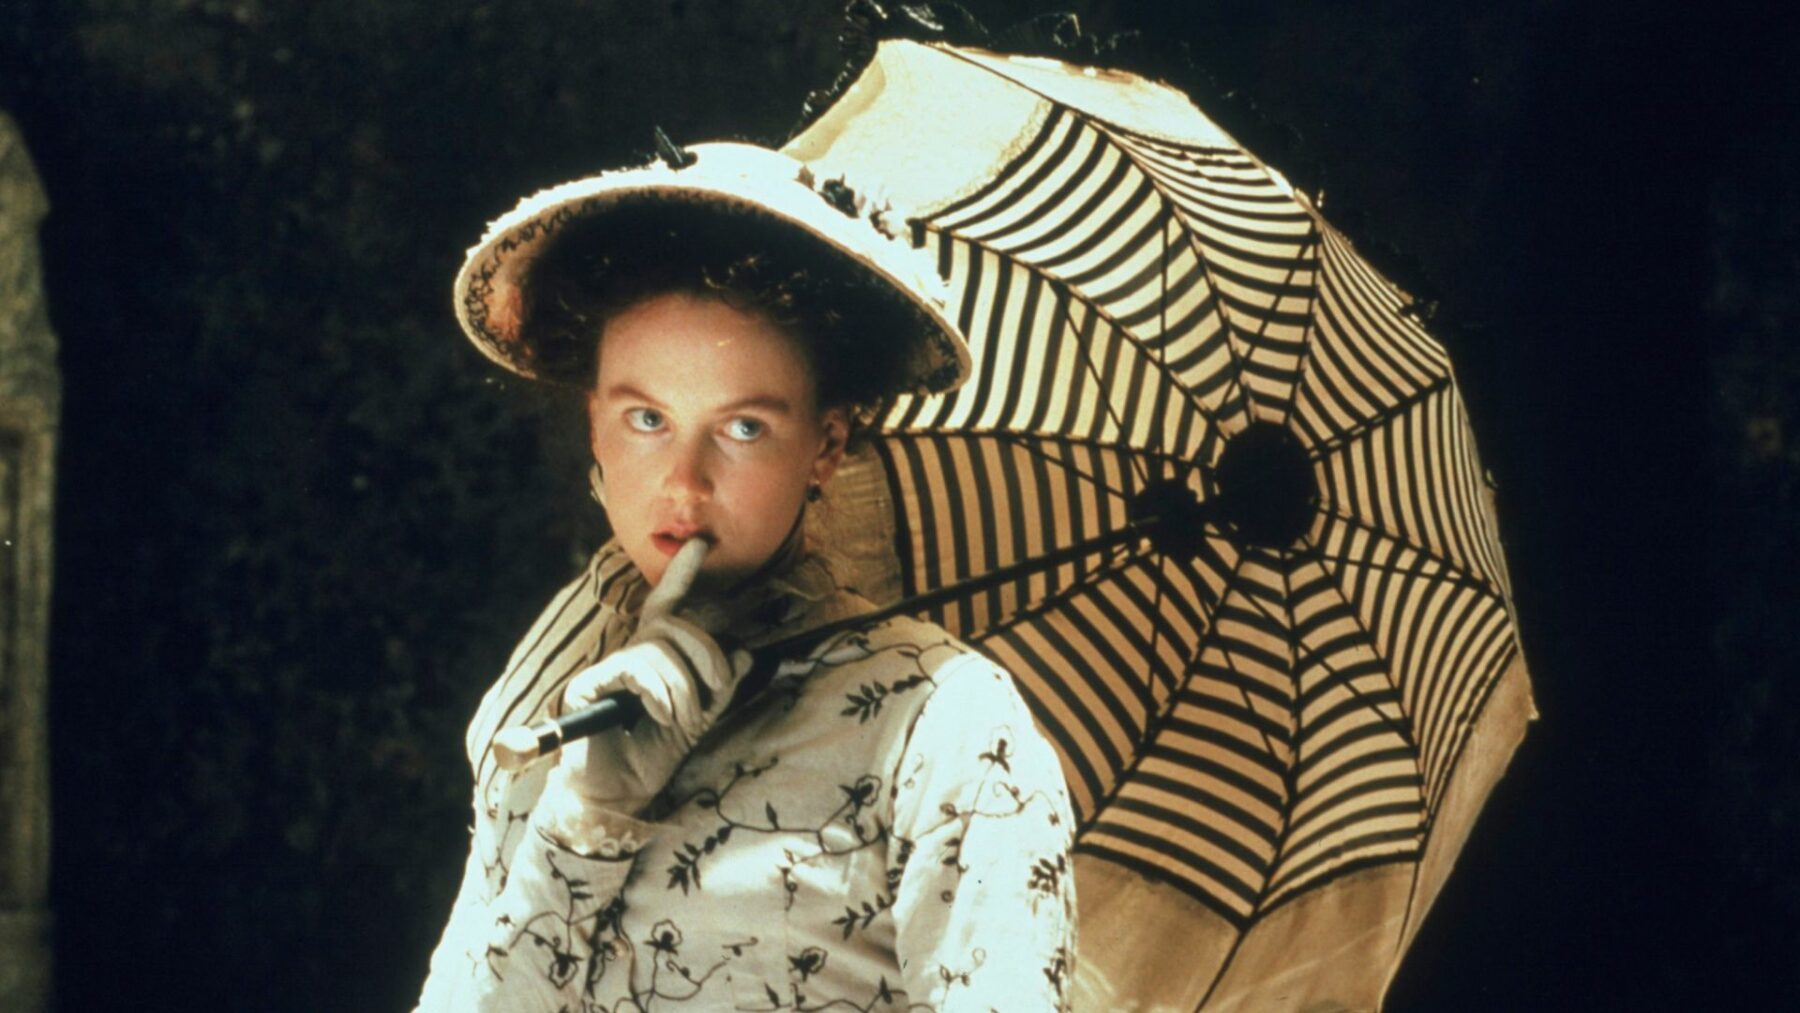 Kadr z kobietą w dziewiętnastowiecznej sukni, w dłoniach trzyma parasolką.